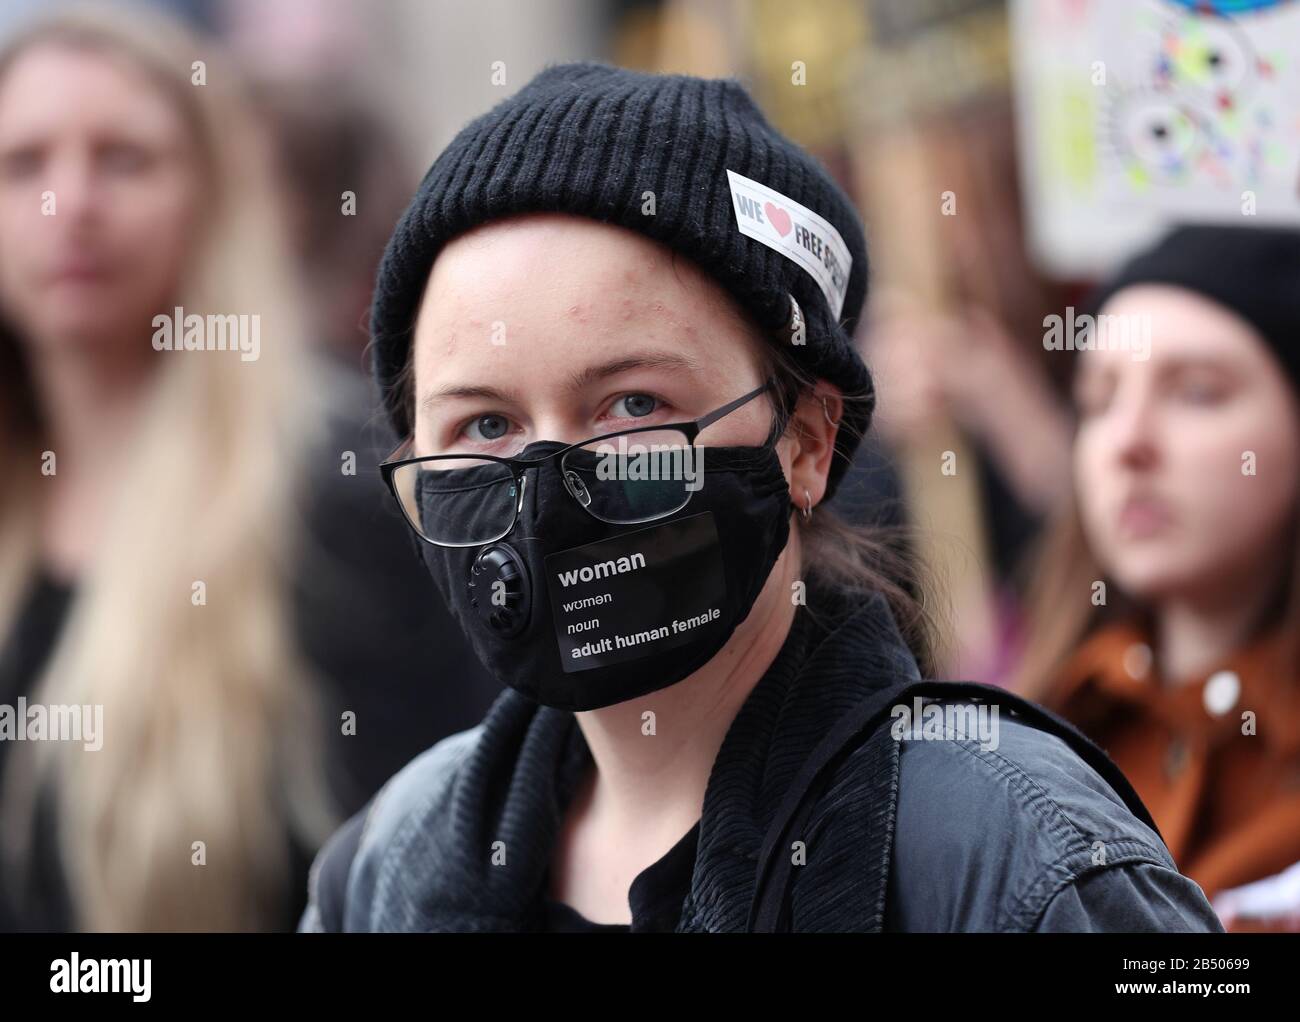 Ein Demonstrant, der während der Millionen Frauen Im März Eine Gesichtsmaske trägt, um ein Ende der männlichen Gewalt gegen Frauen und Mädchen in allen ihren Formen zu fordern, im Zentrum Londons. Stockfoto